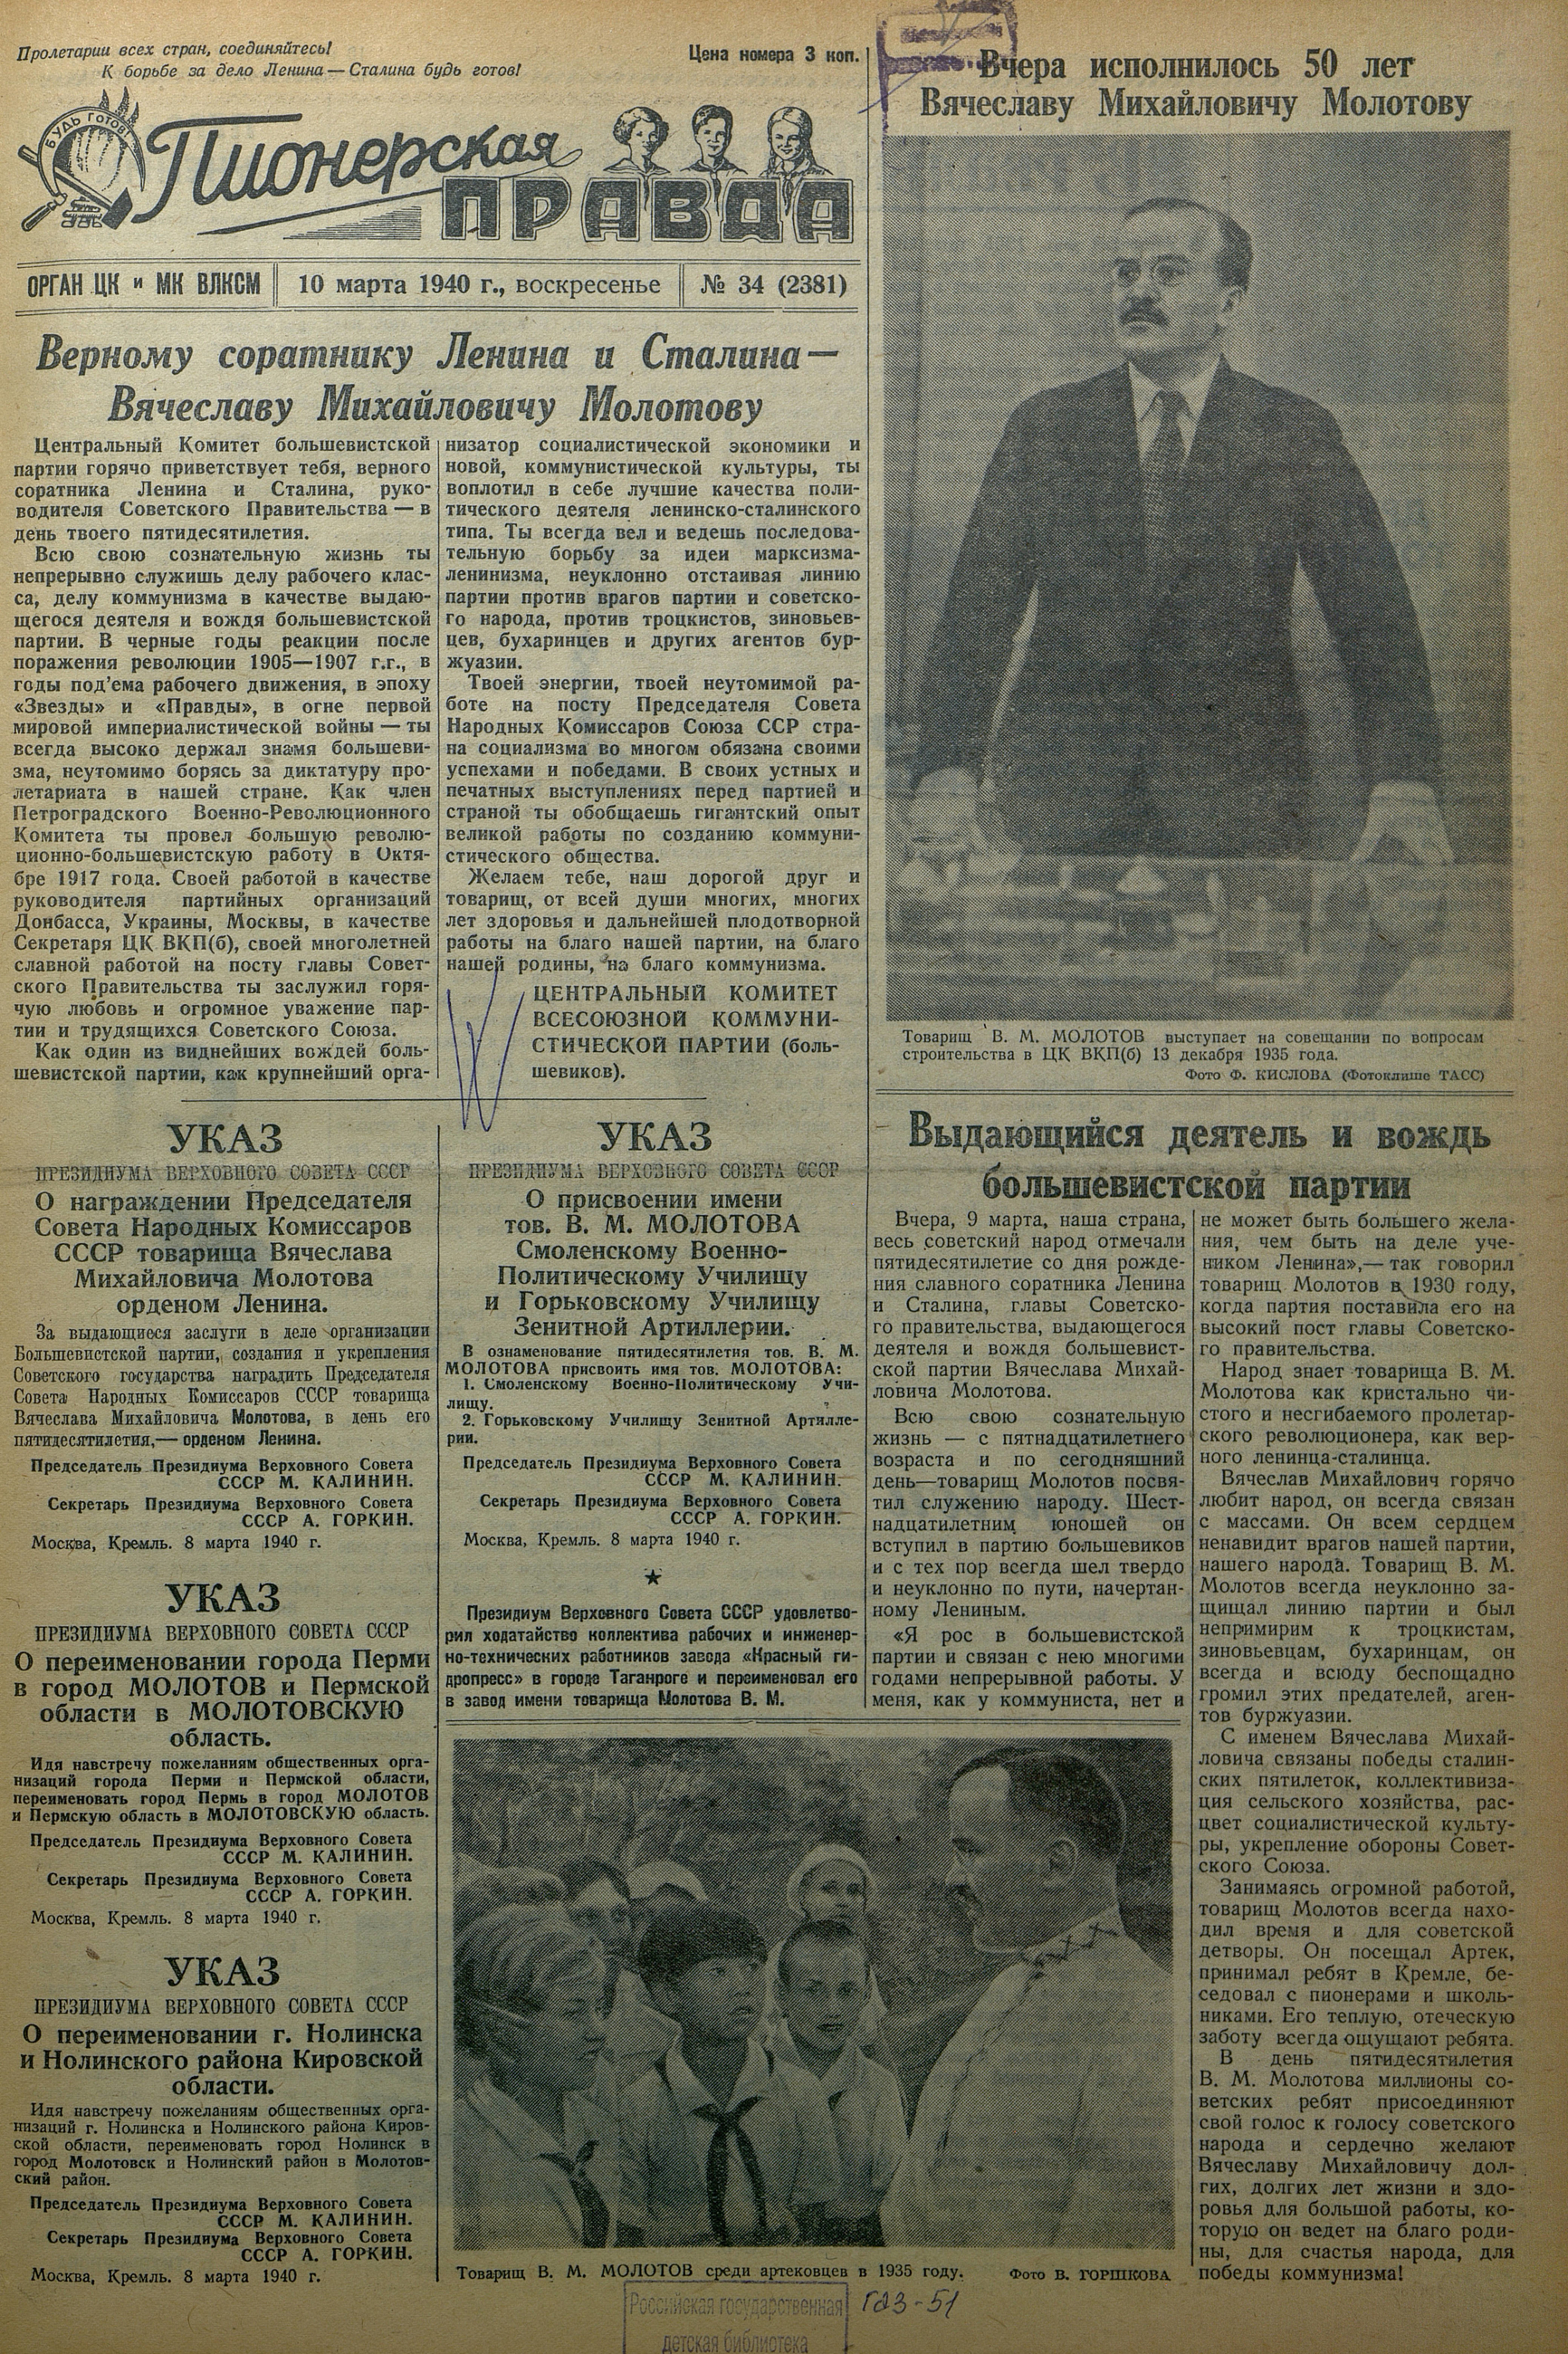 Пионерская правда. 1940. № 034 (2381): Орган ЦК и МК ВЛКСМ - 1940